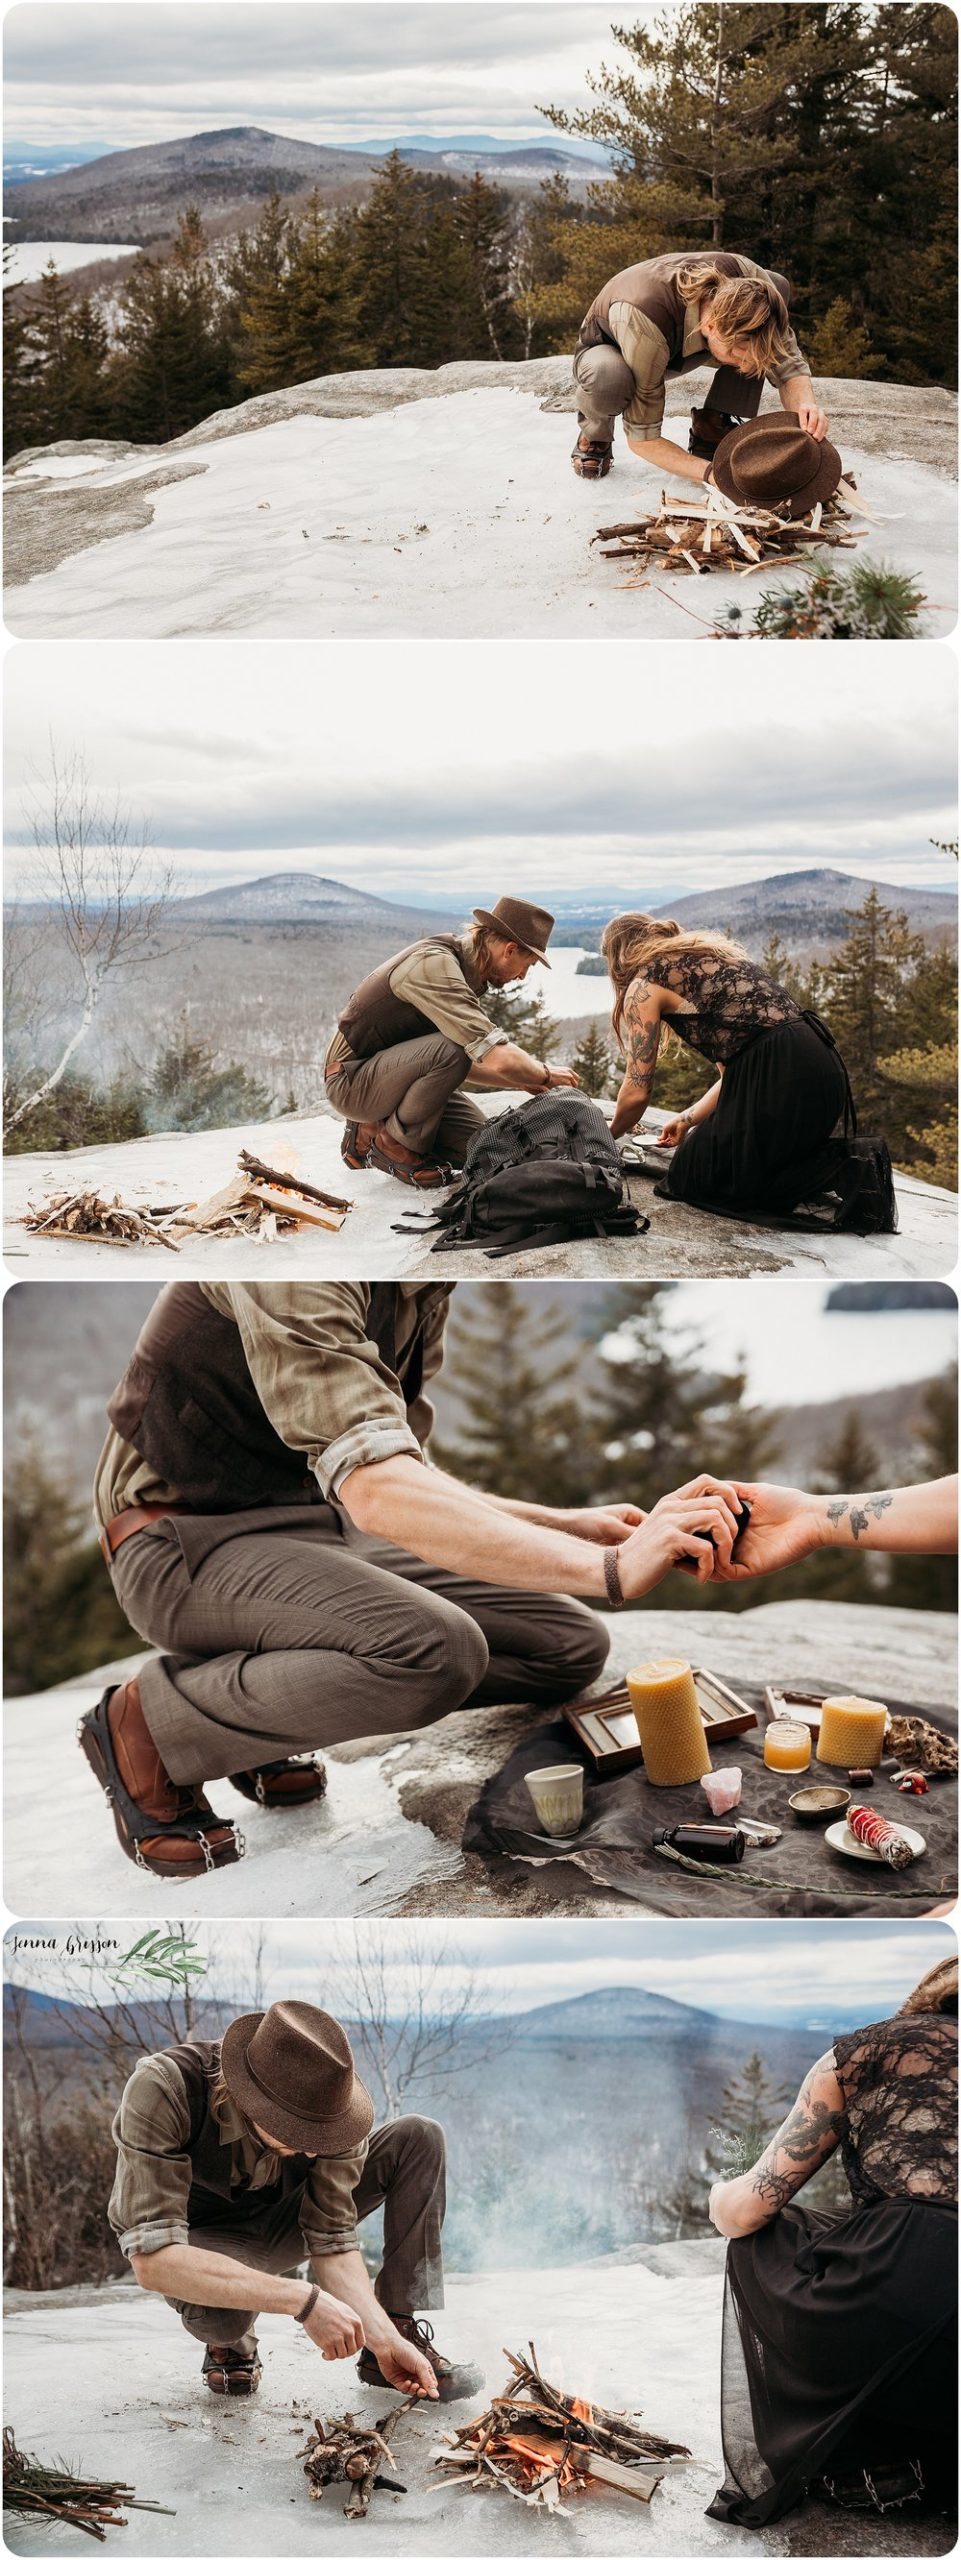 Adventure Wedding Photographer - Vermont Destination Wedding